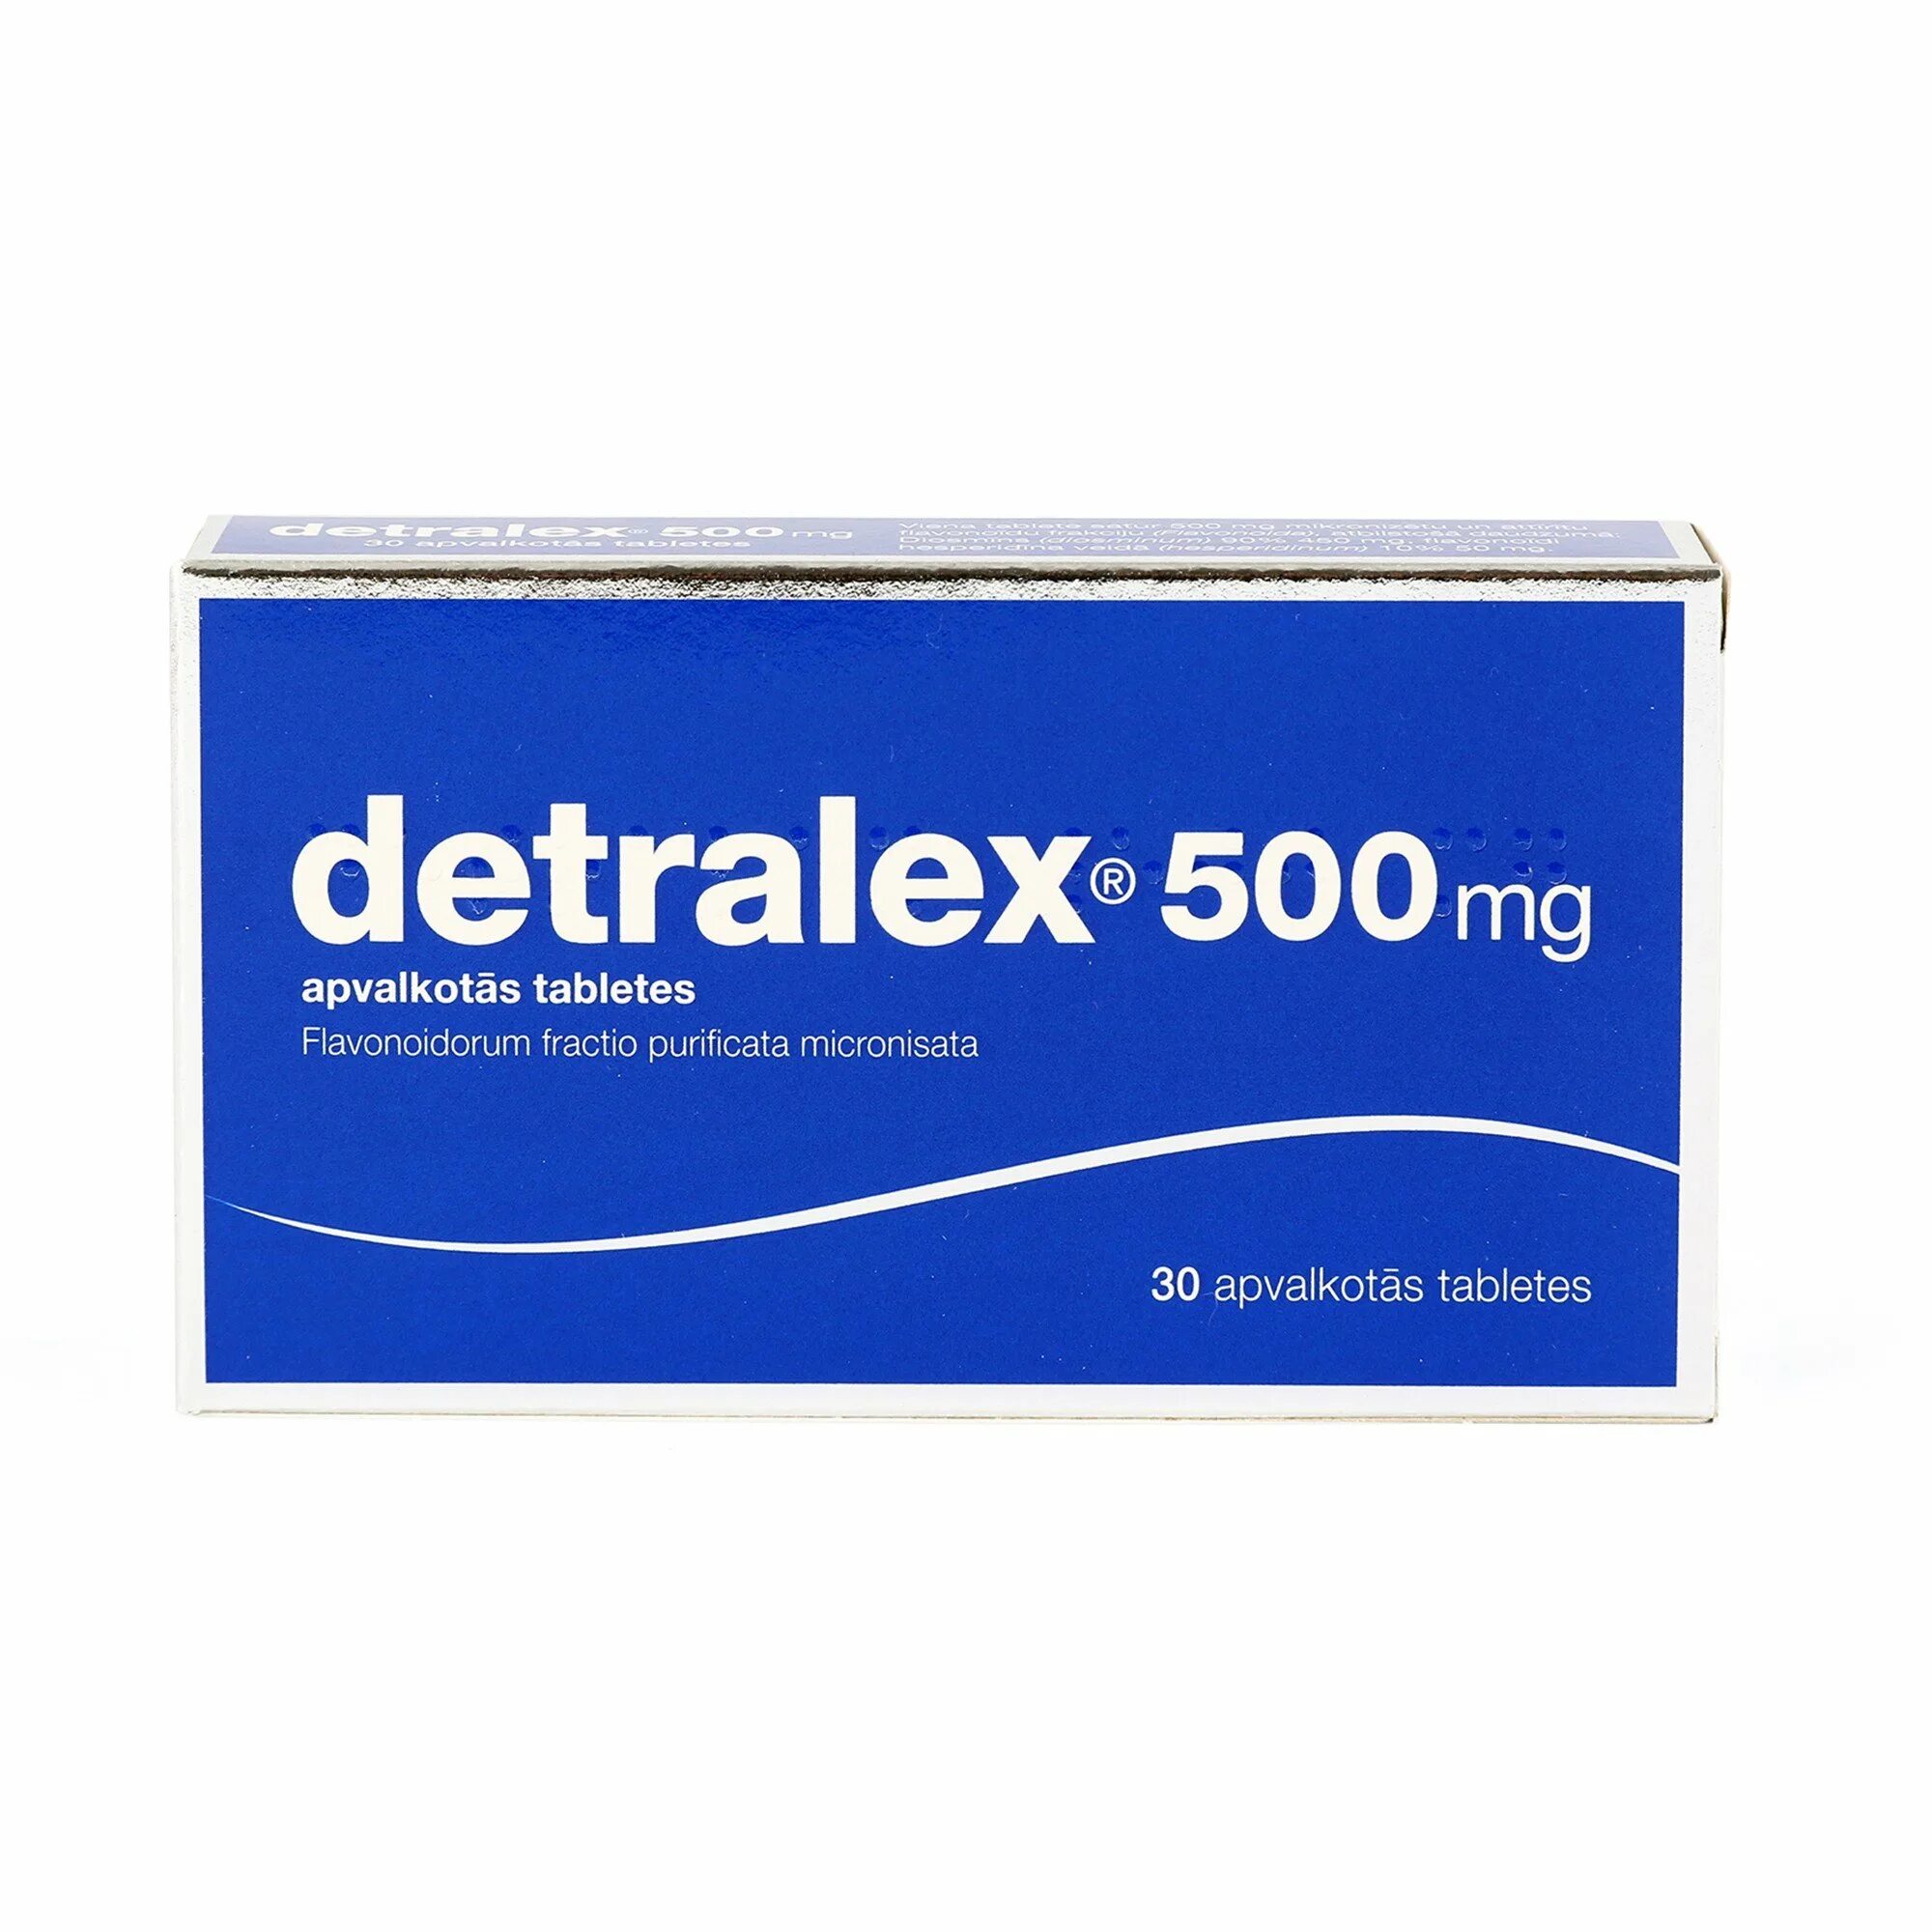 Детралекс 500 купить в москве. Детралекс 500 мг. Detralex 500. Детралекс 1000.